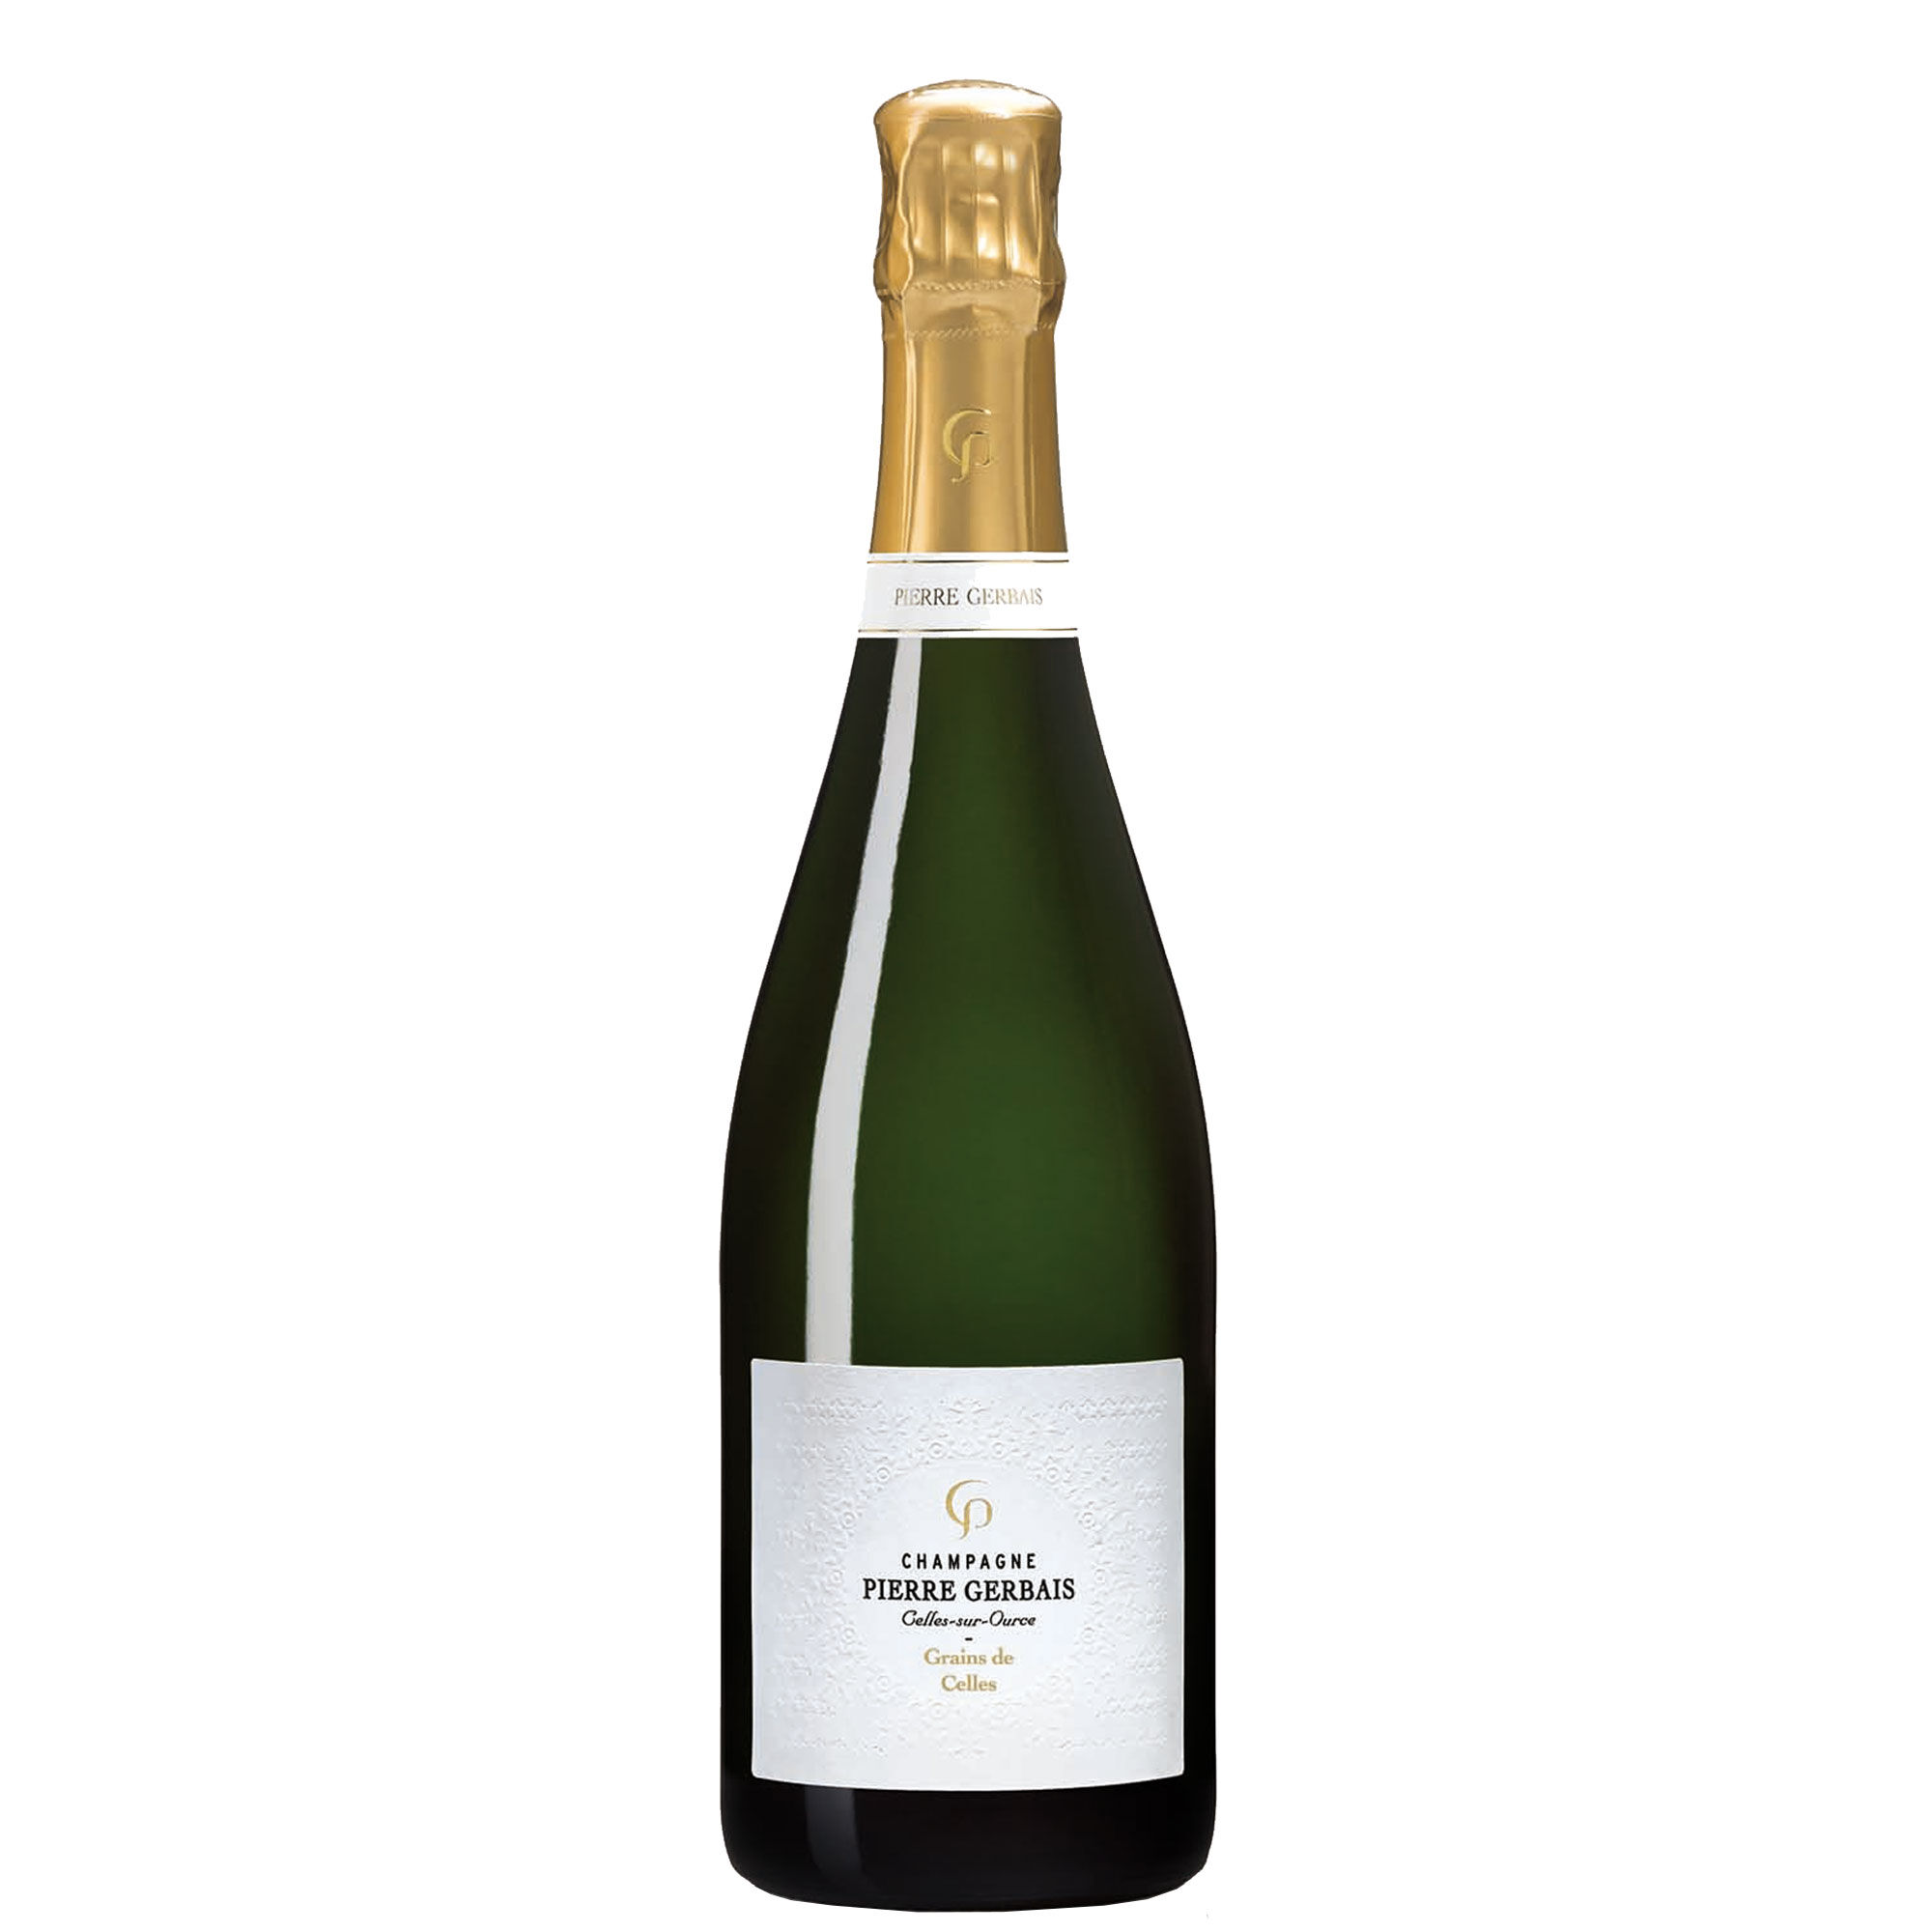 Pierre Gerbais Champagne Extra Brut “grains De Celles” 2017